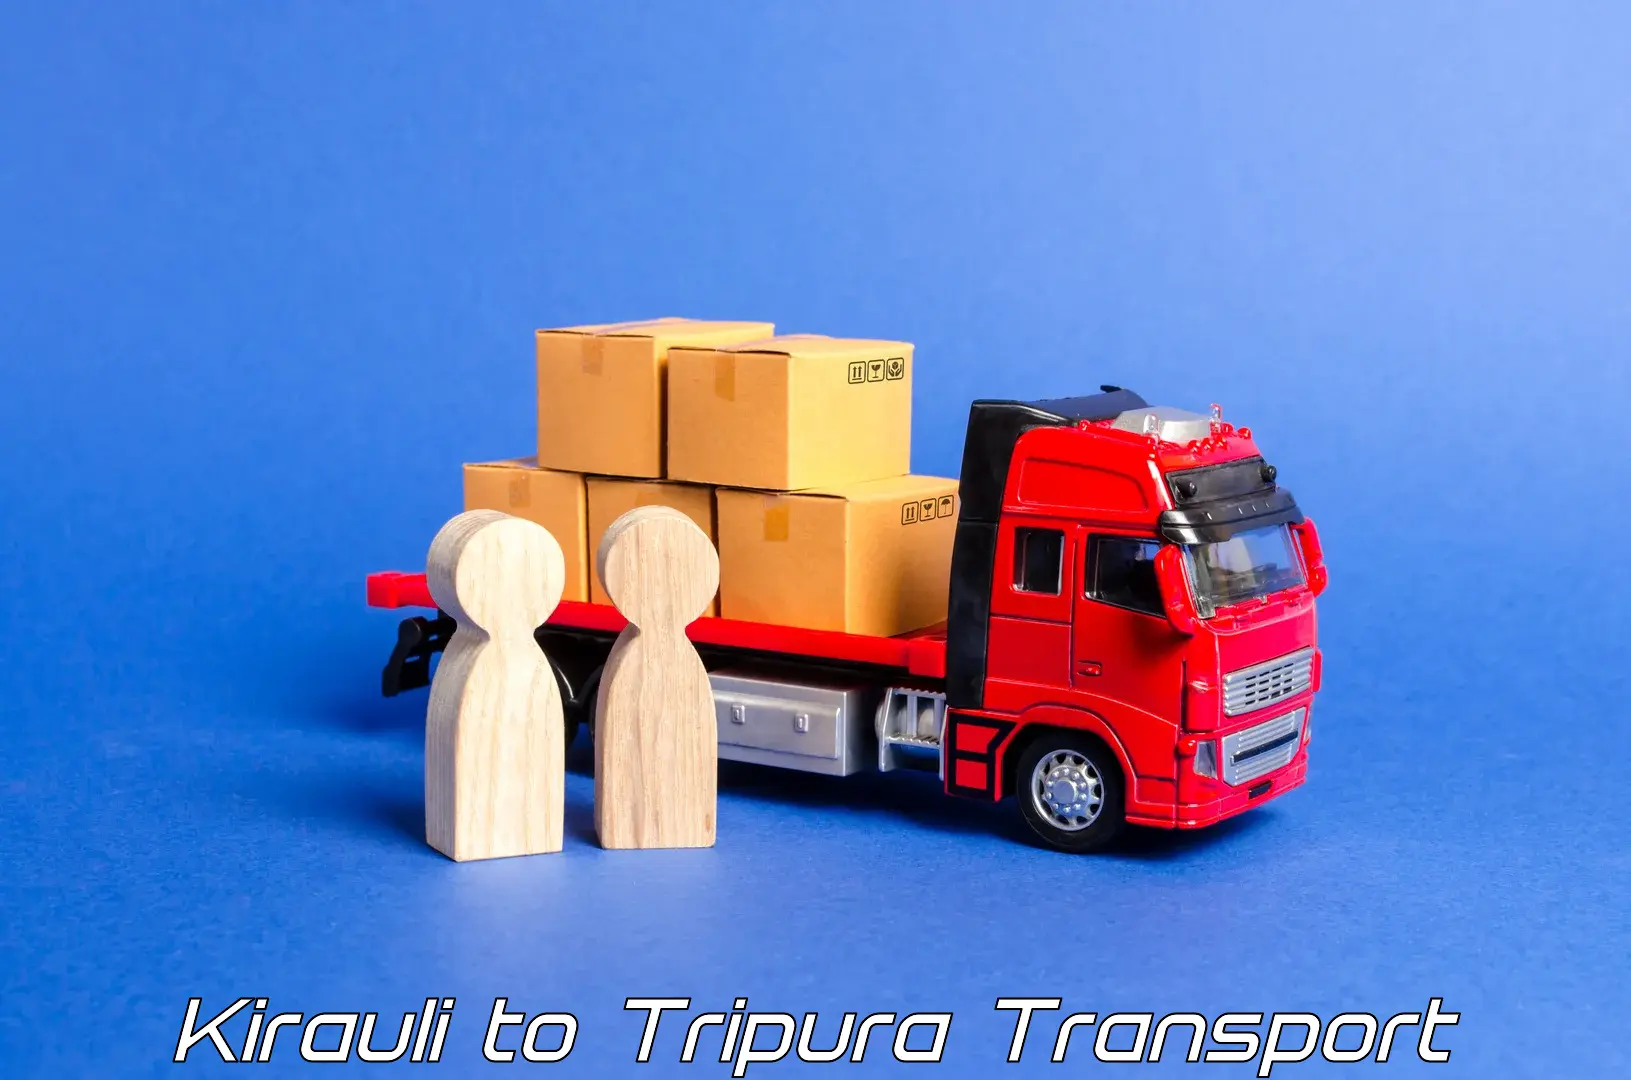 Vehicle transport services Kirauli to Ambassa